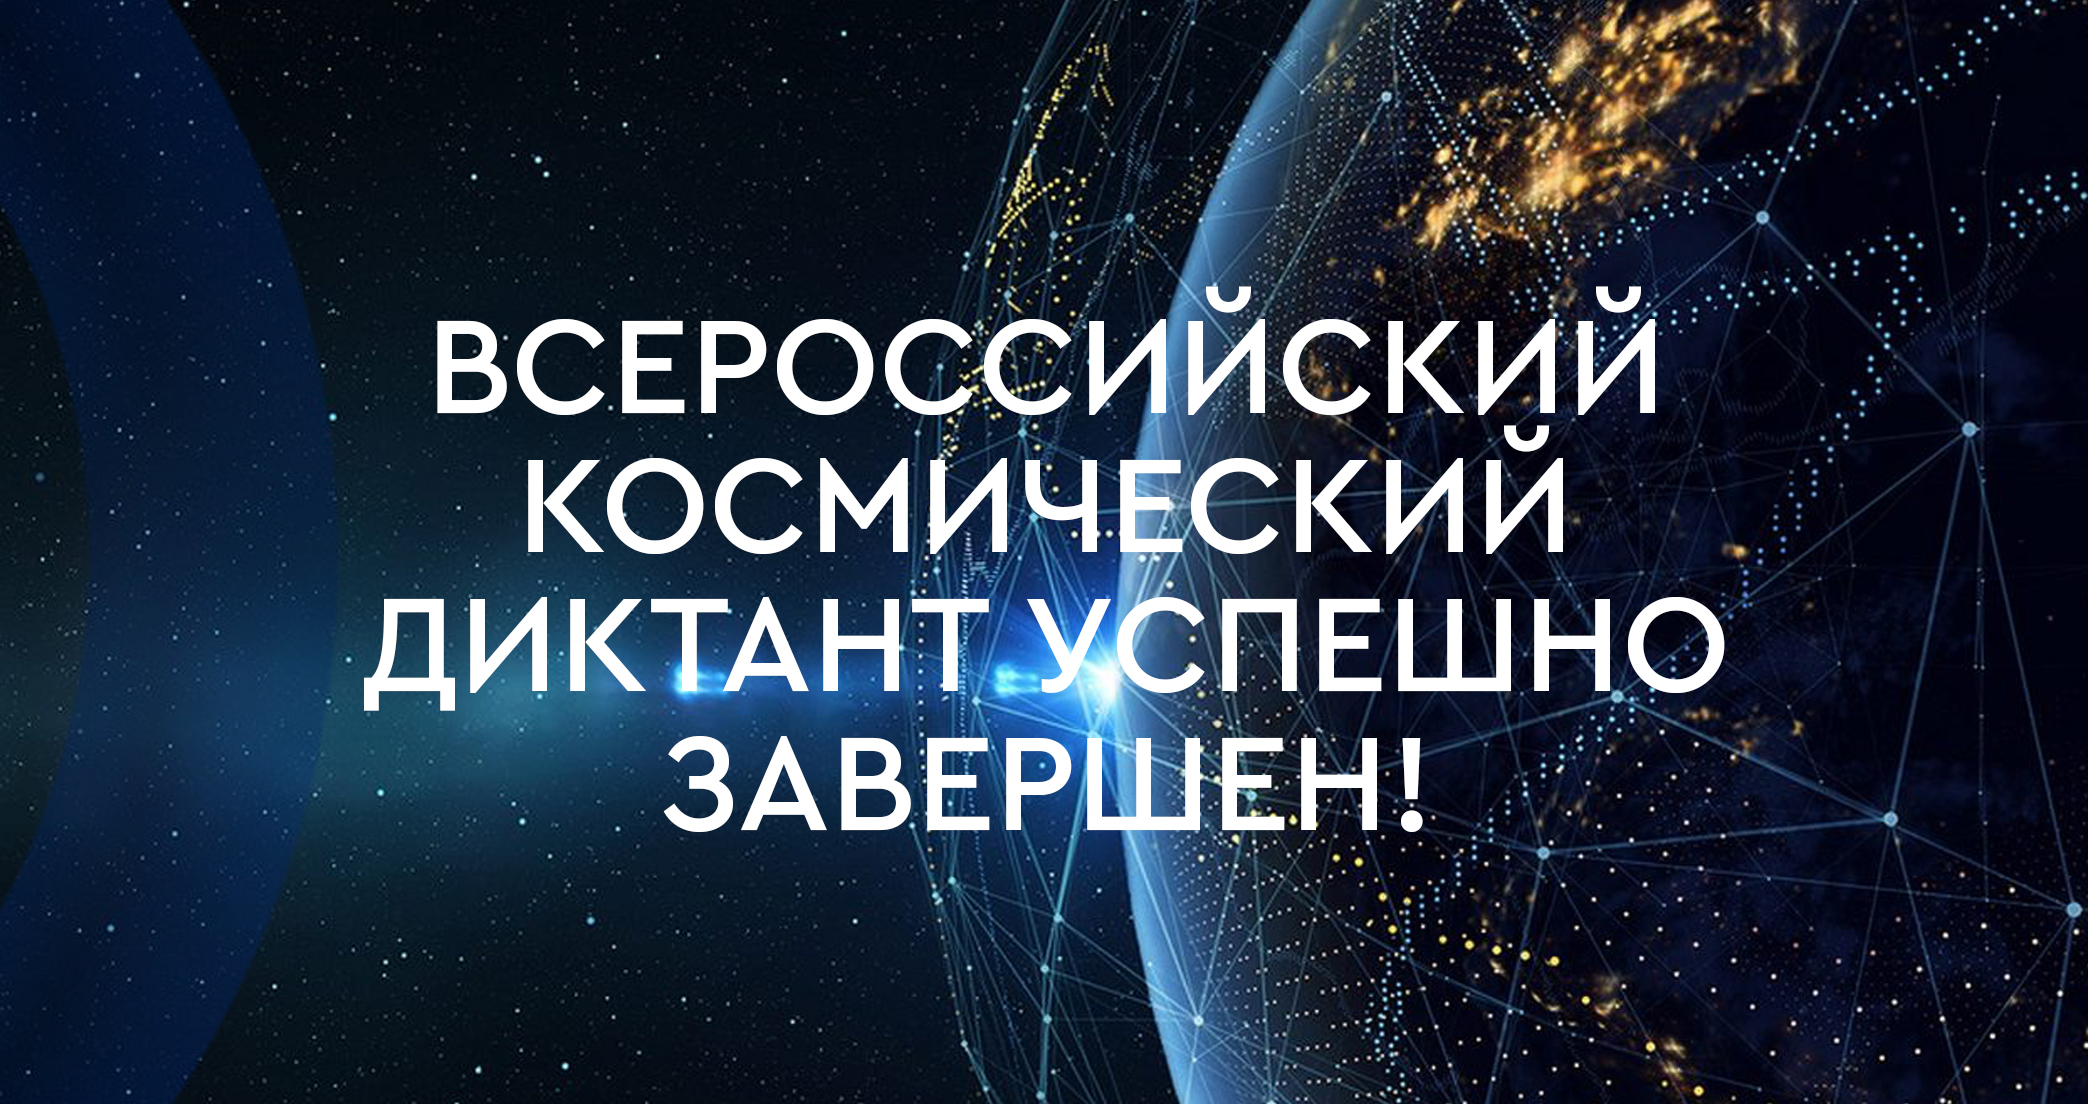 «Всероссийский космический диктант» успешно завершен!